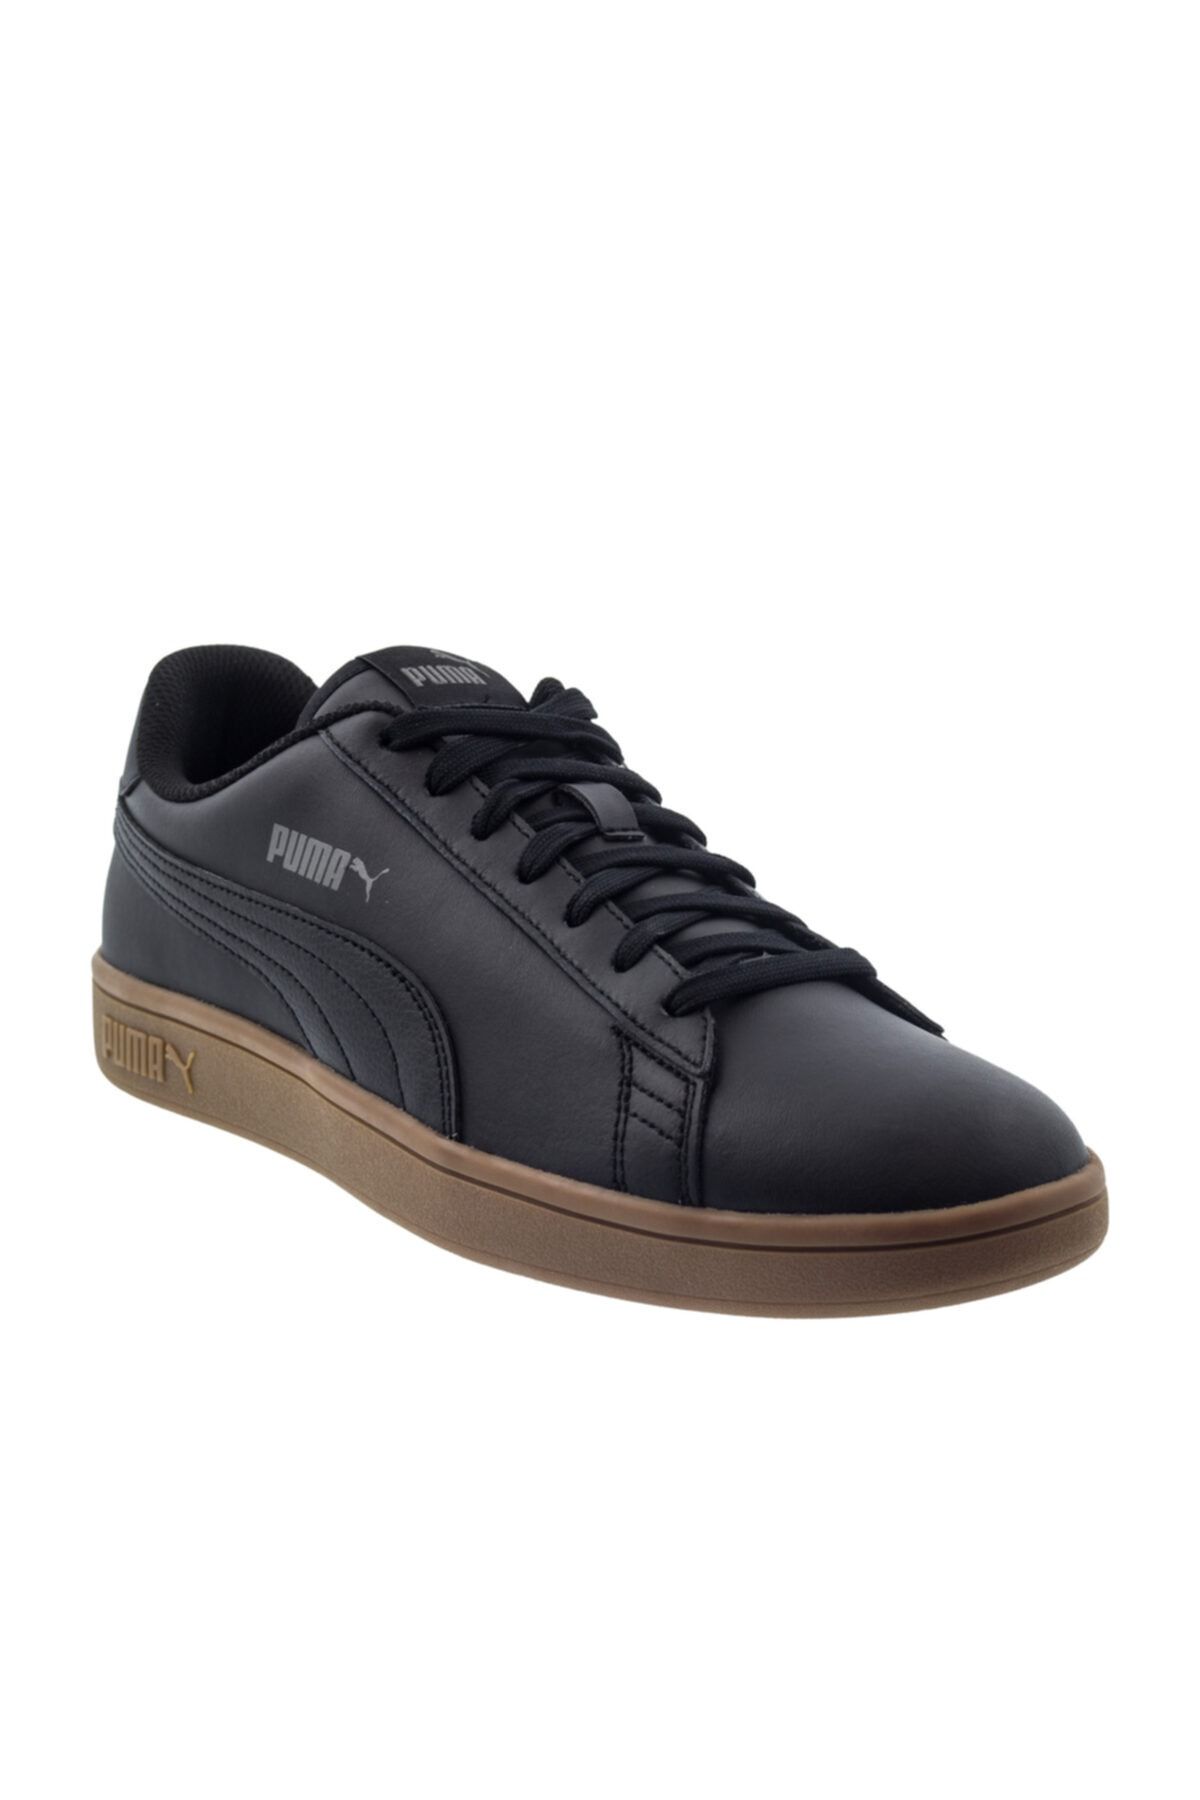 Puma SMASH V2 L Siyah Erkek Sneaker Ayakkabı 100414776